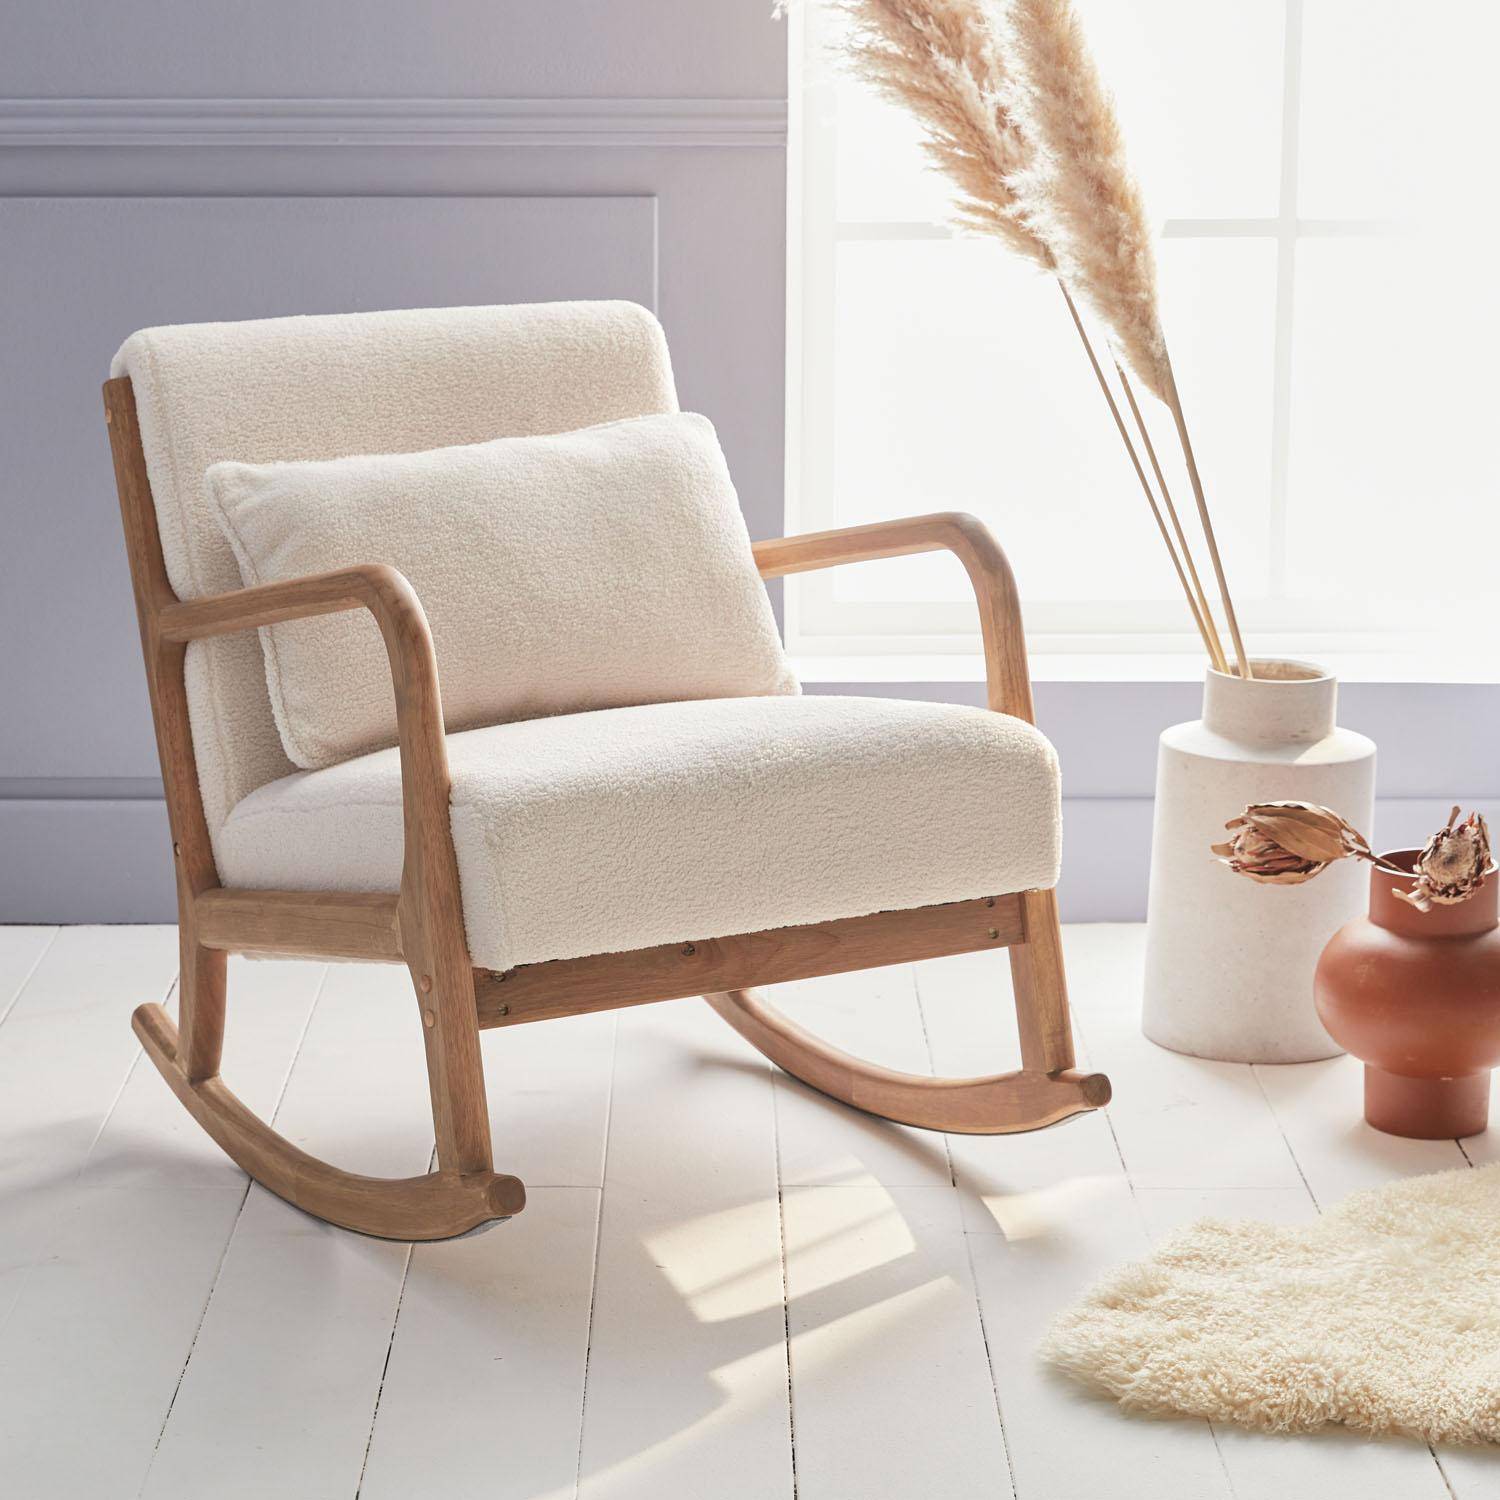 Fauteuil à bascule design en bois et tissu, bouclettes blanches, 1 place, rocking chair scandinave,sweeek,Photo1